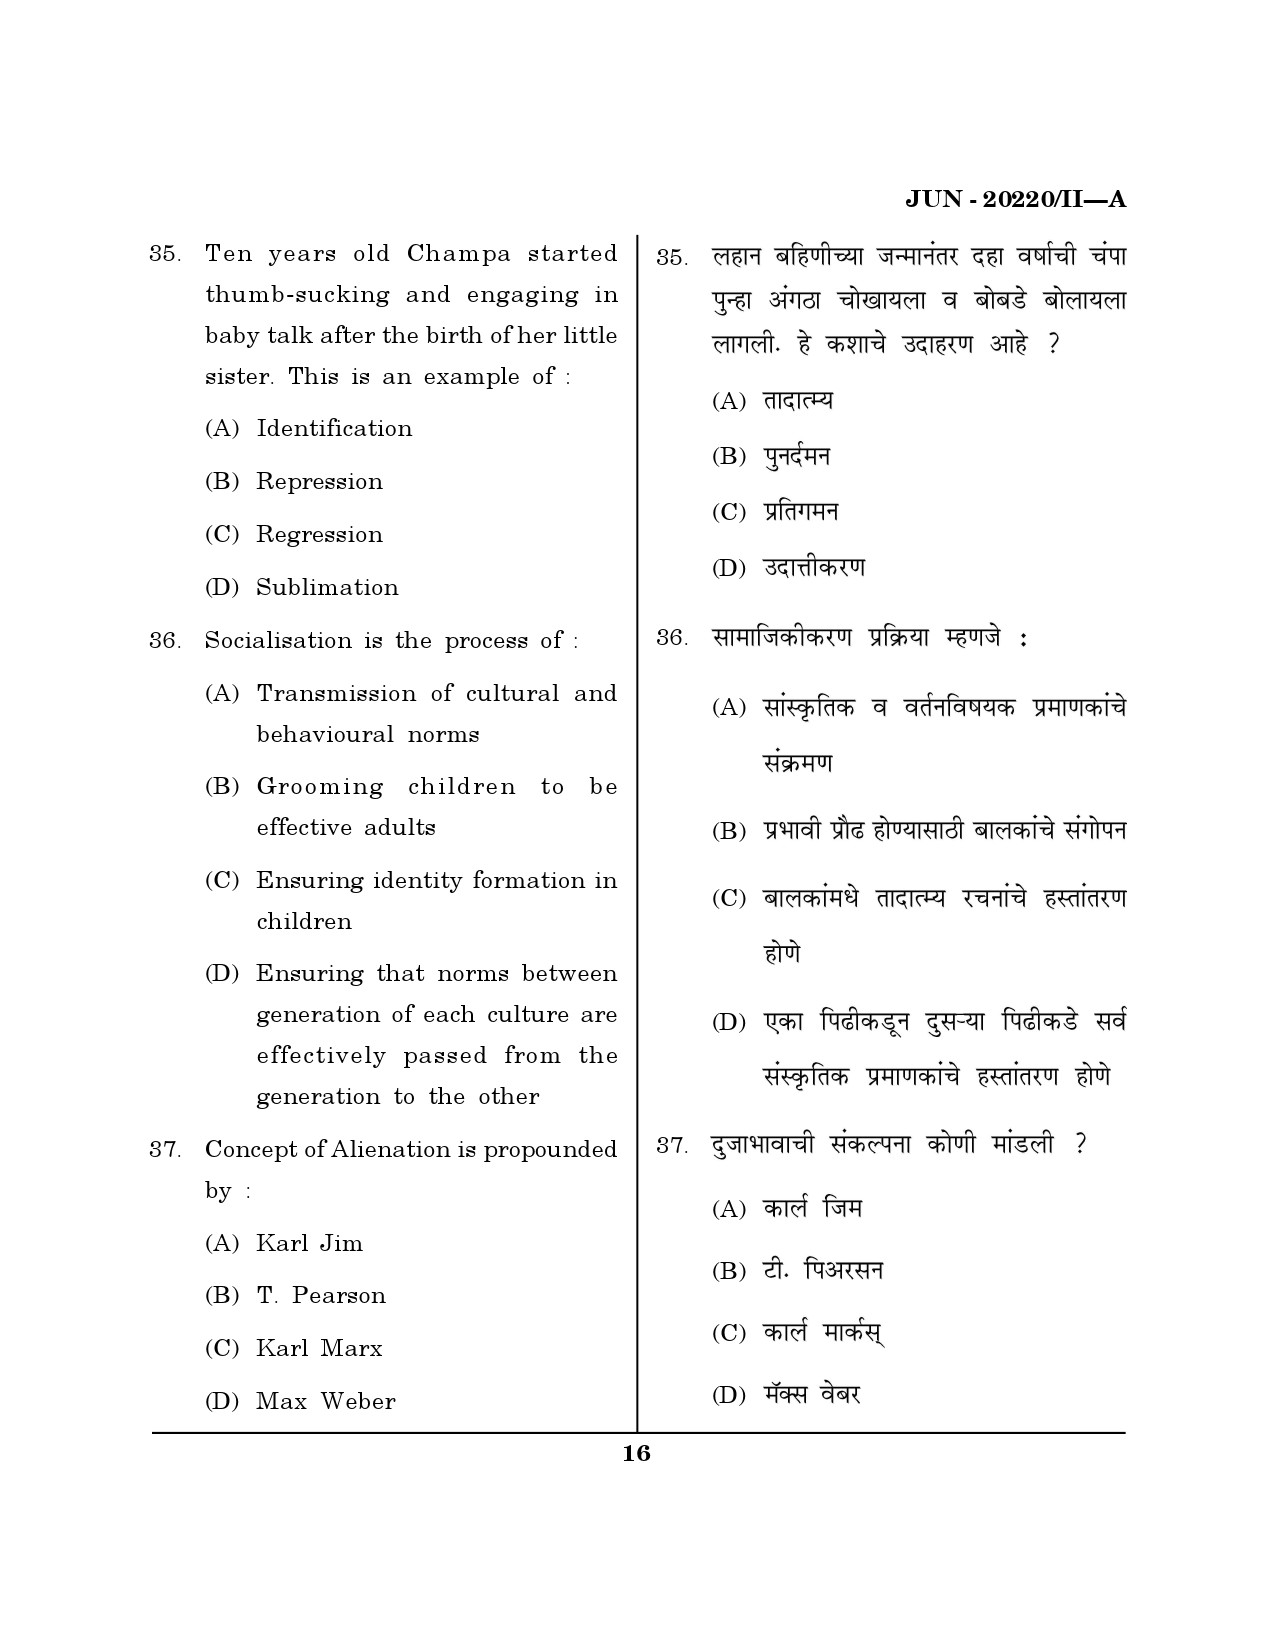 Maharashtra SET Social Work Question Paper II June 2020 15